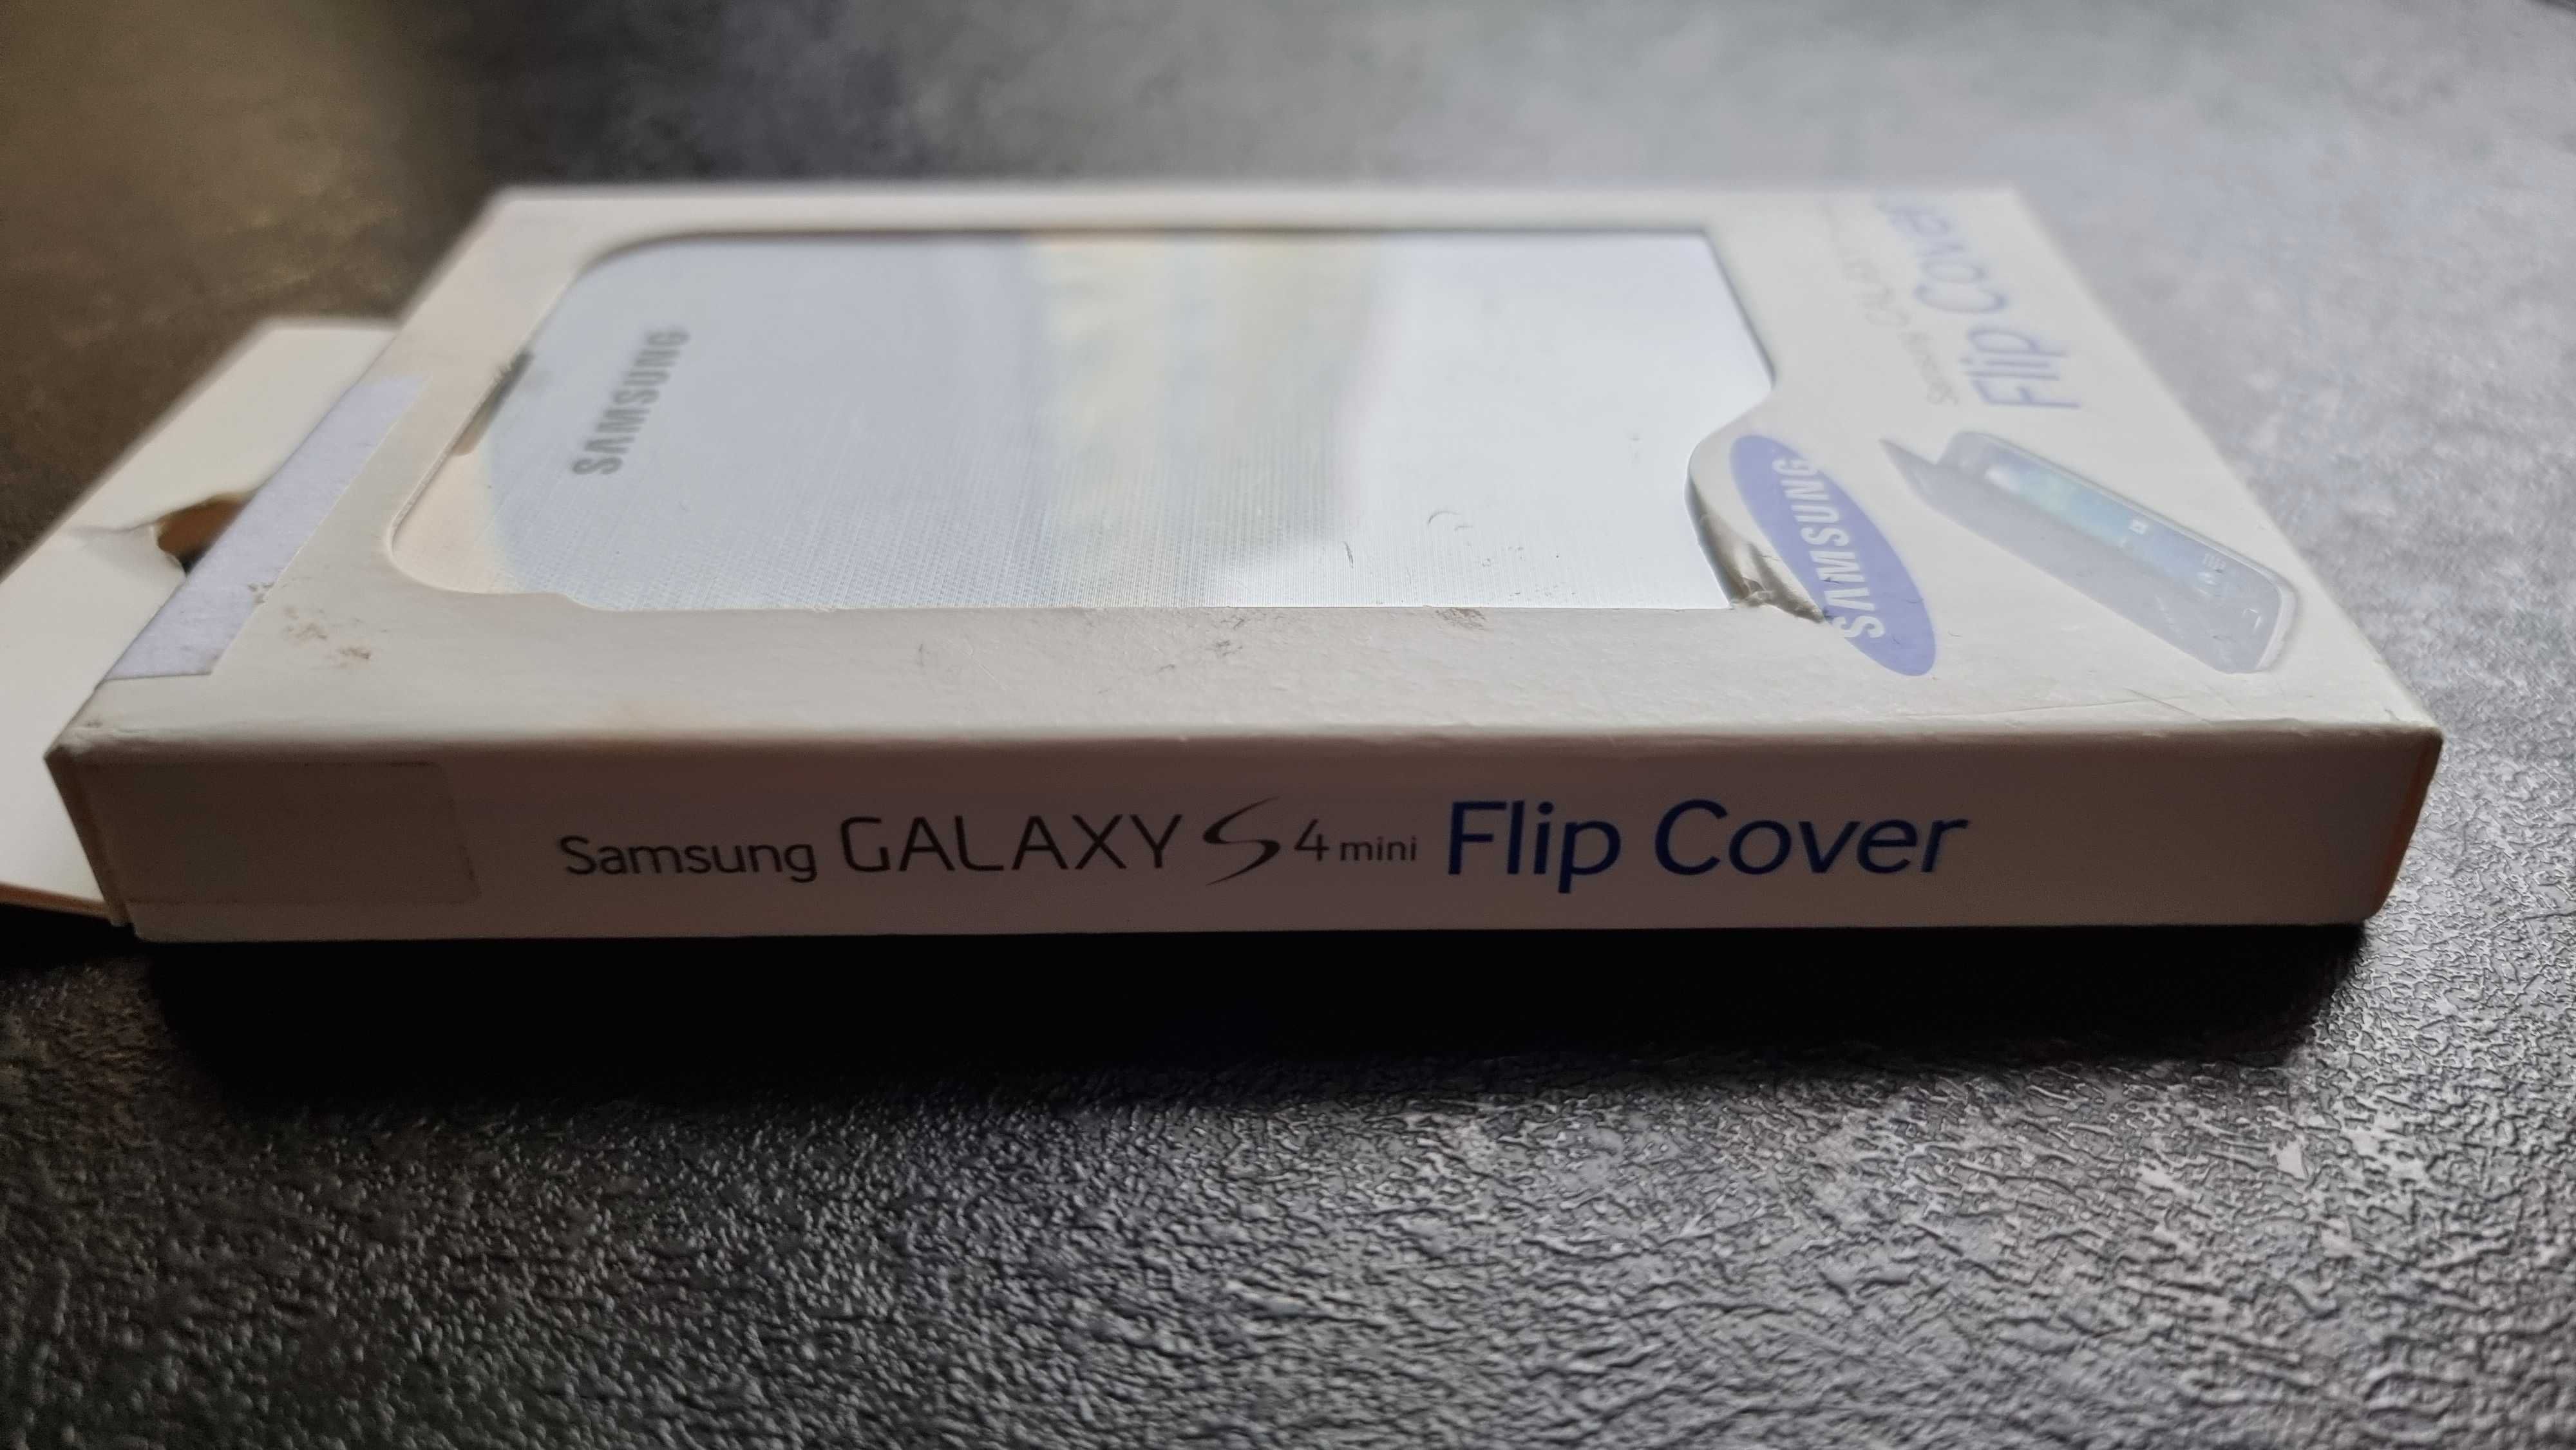 Samsung Galaxy S4 mini Flip Cover